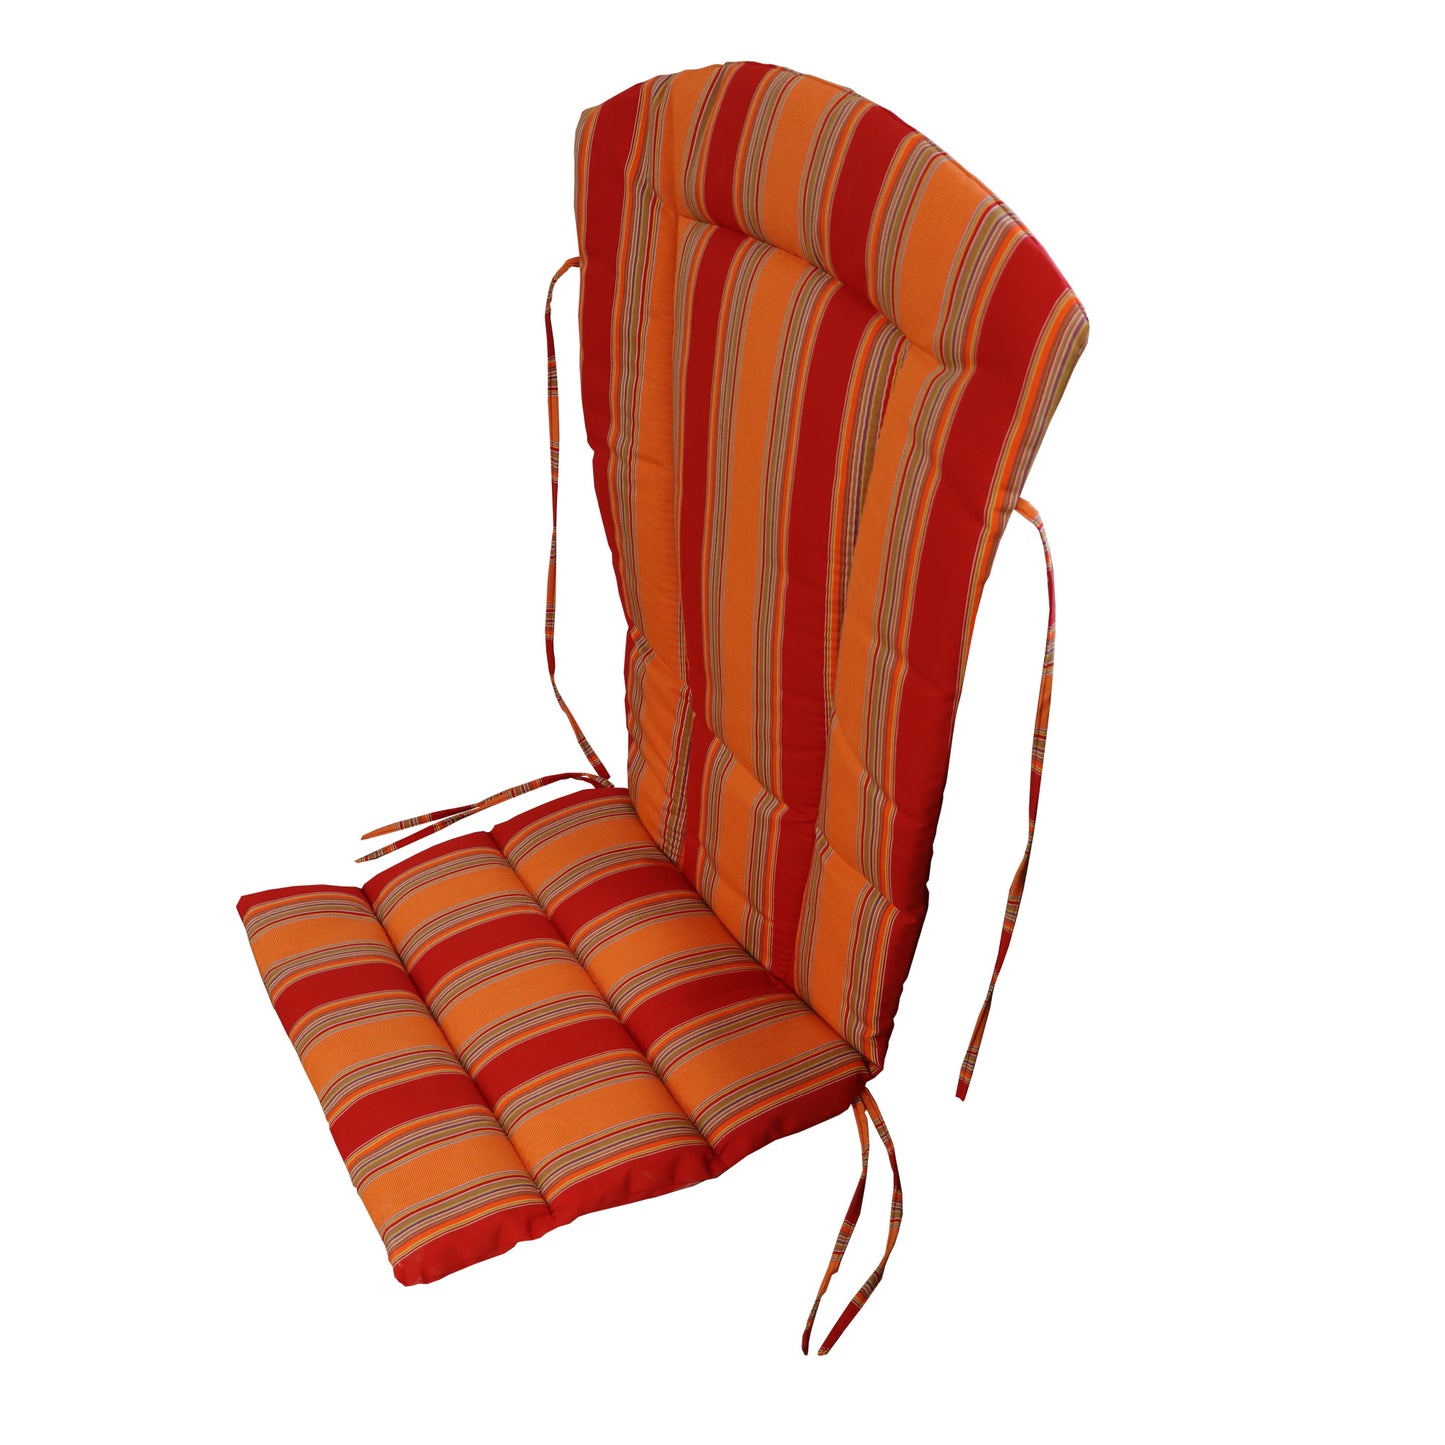 Adirondack Chair Cushion